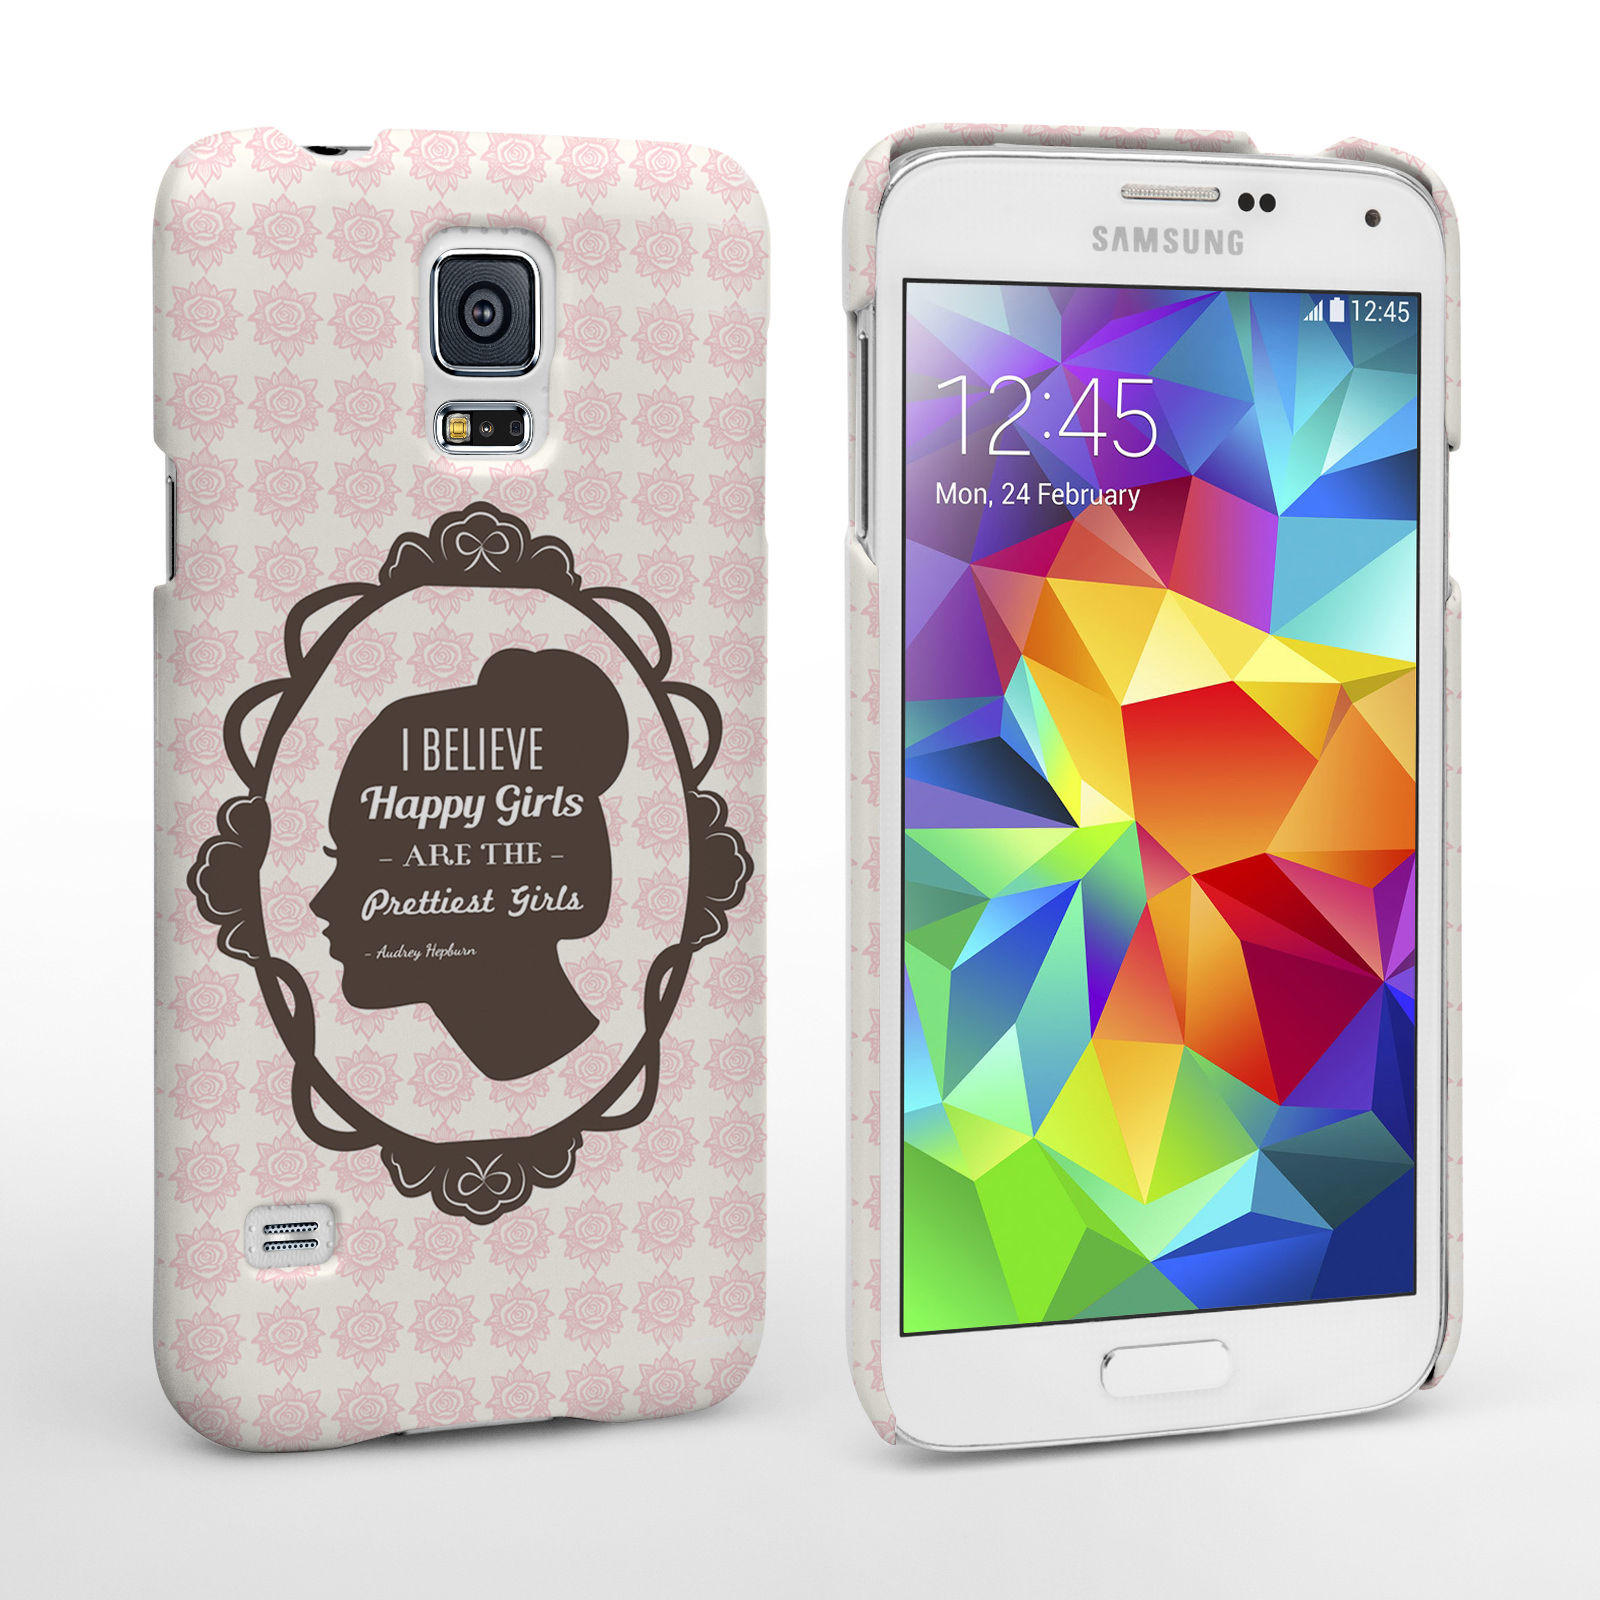 Caseflex Samsung Galaxy S5 Audrey Hepburn ‘Happy Girls’ Quote Case